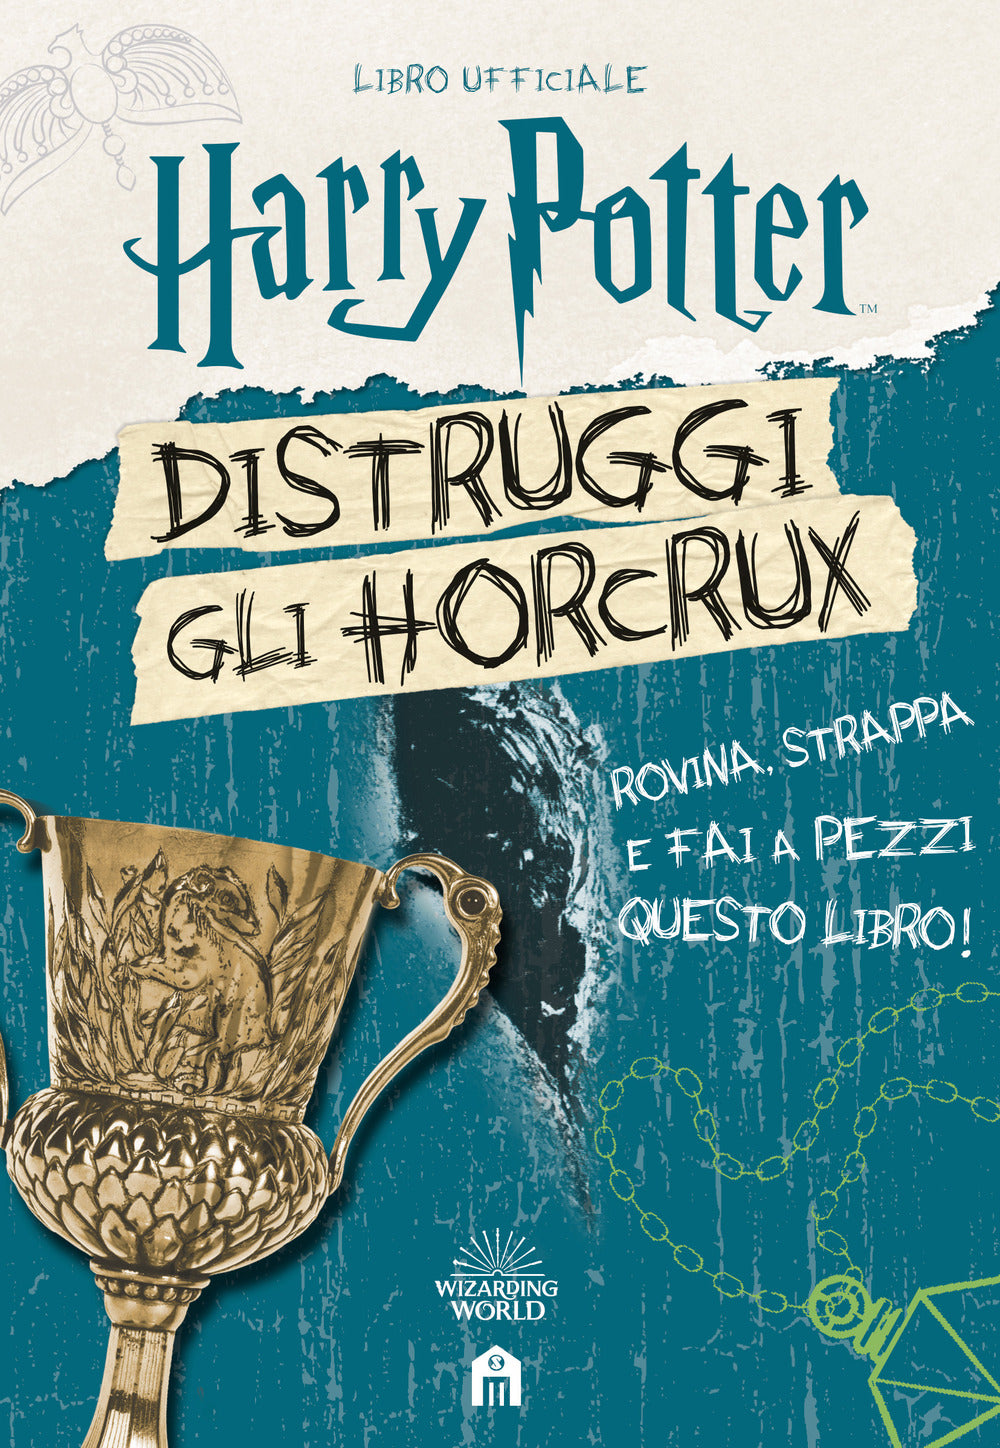 Harry Potter. Distruggi gli Horcrux: libro di J. Rowling